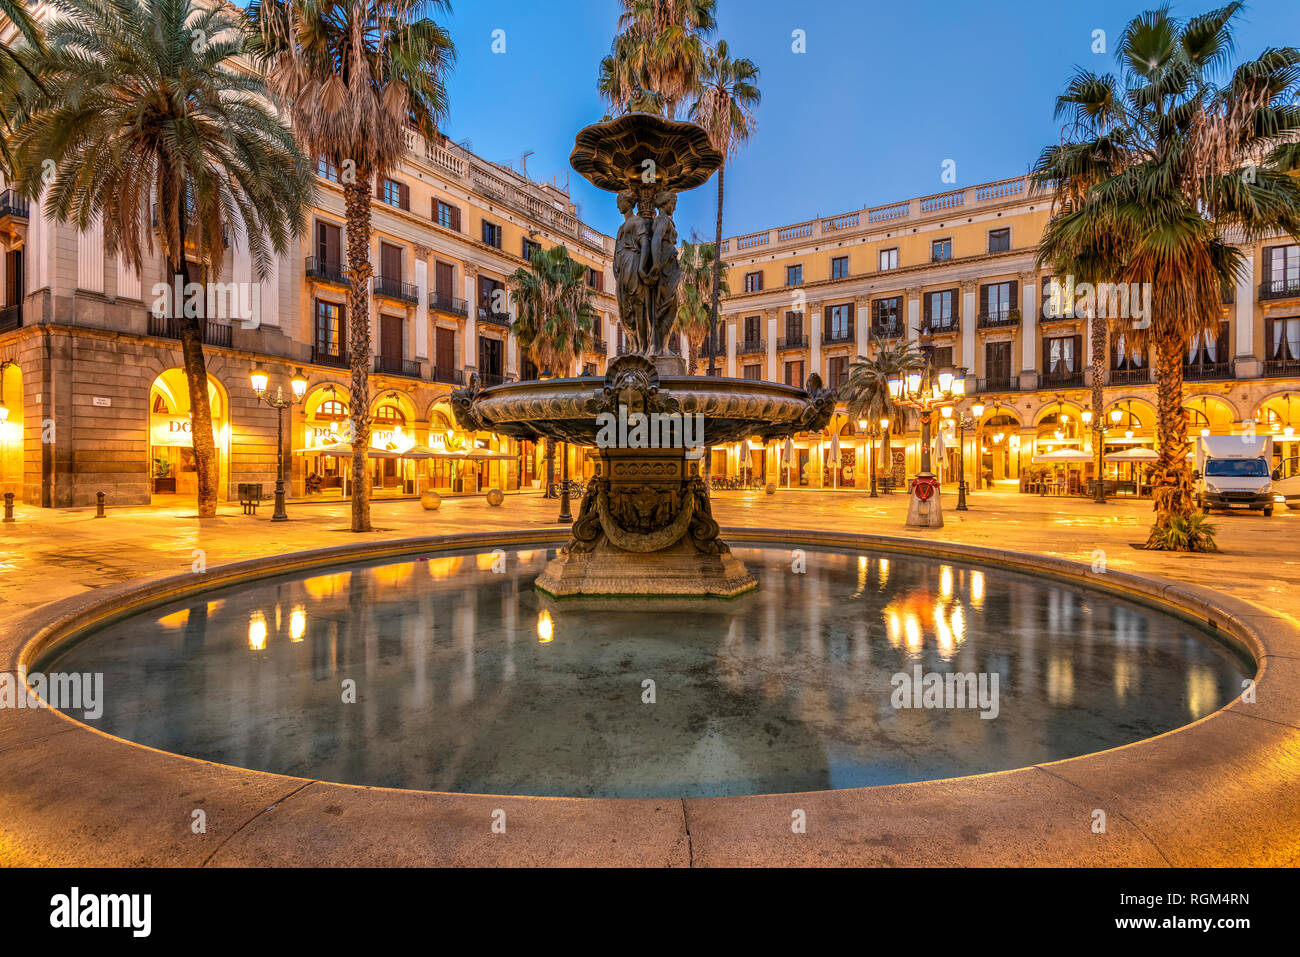 Vista notturna di Placa Reial square o Plaza Real nel quartiere Gotico di Barcellona, in Catalogna, Spagna Foto Stock